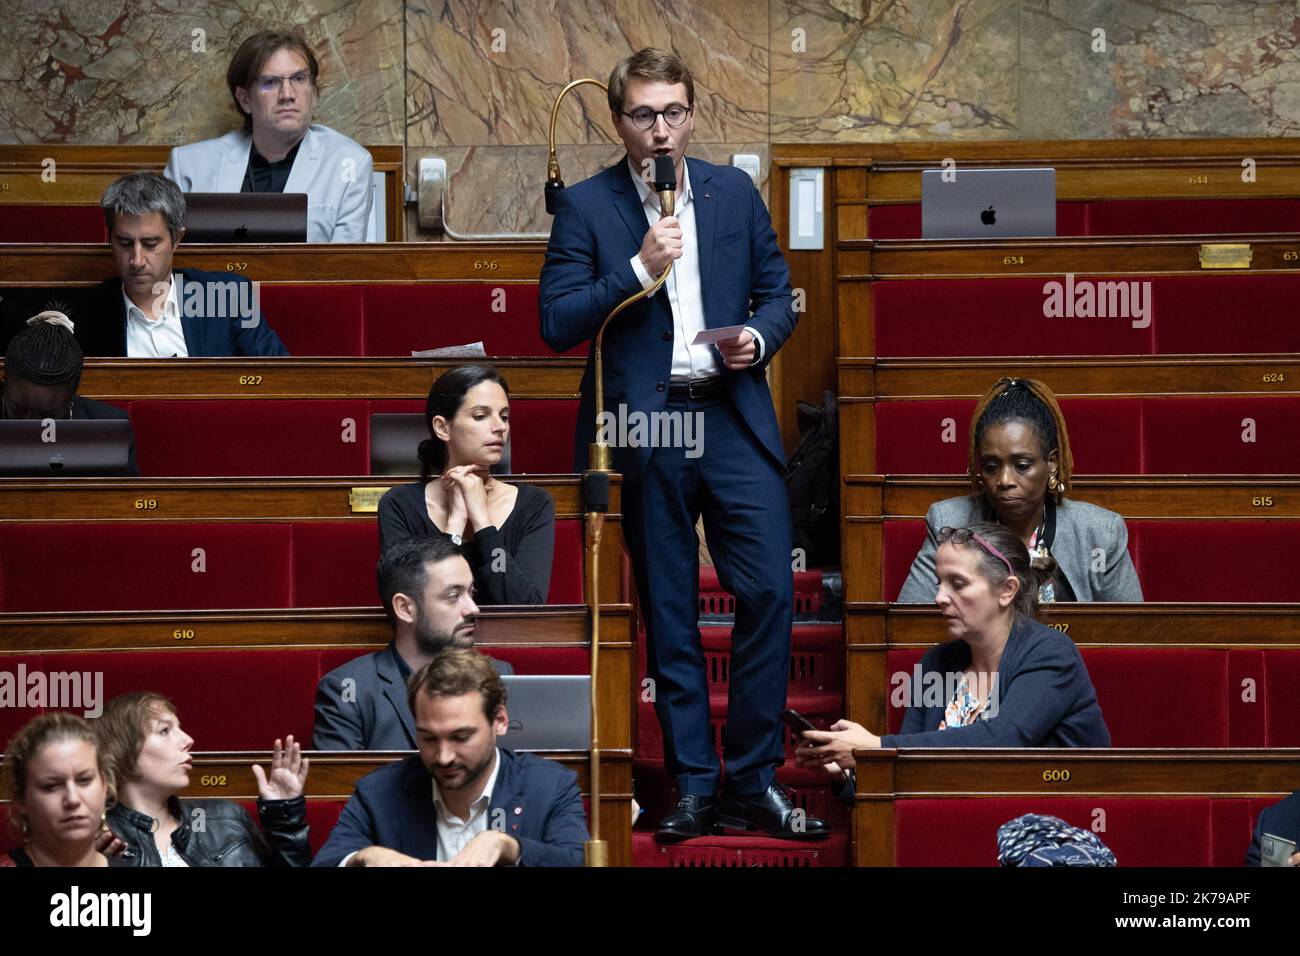 François Piquemal, député du LFI, parle lors de la discussion sur le projet de loi budgétaire 2023 à l'Assemblée nationale française, à Paris, sur 17 octobre 2022. Photo de Raphael Lafargue/ABACAPRESS.COM Banque D'Images